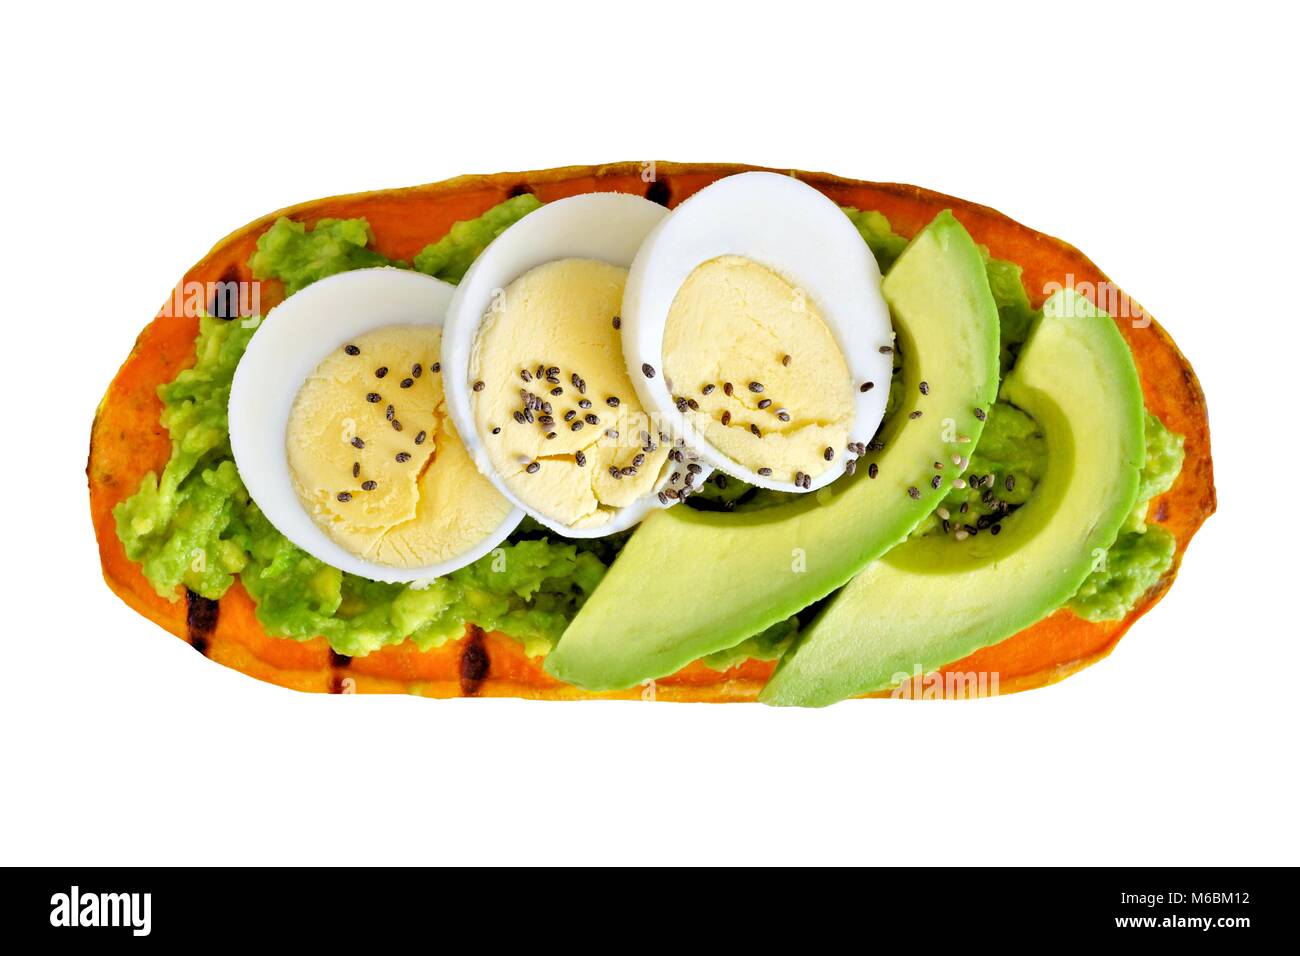 Süßkartoffel-Toast mit Avocado, Eier und Chia Samen. Auf einem weißen Hintergrund. Stockfoto